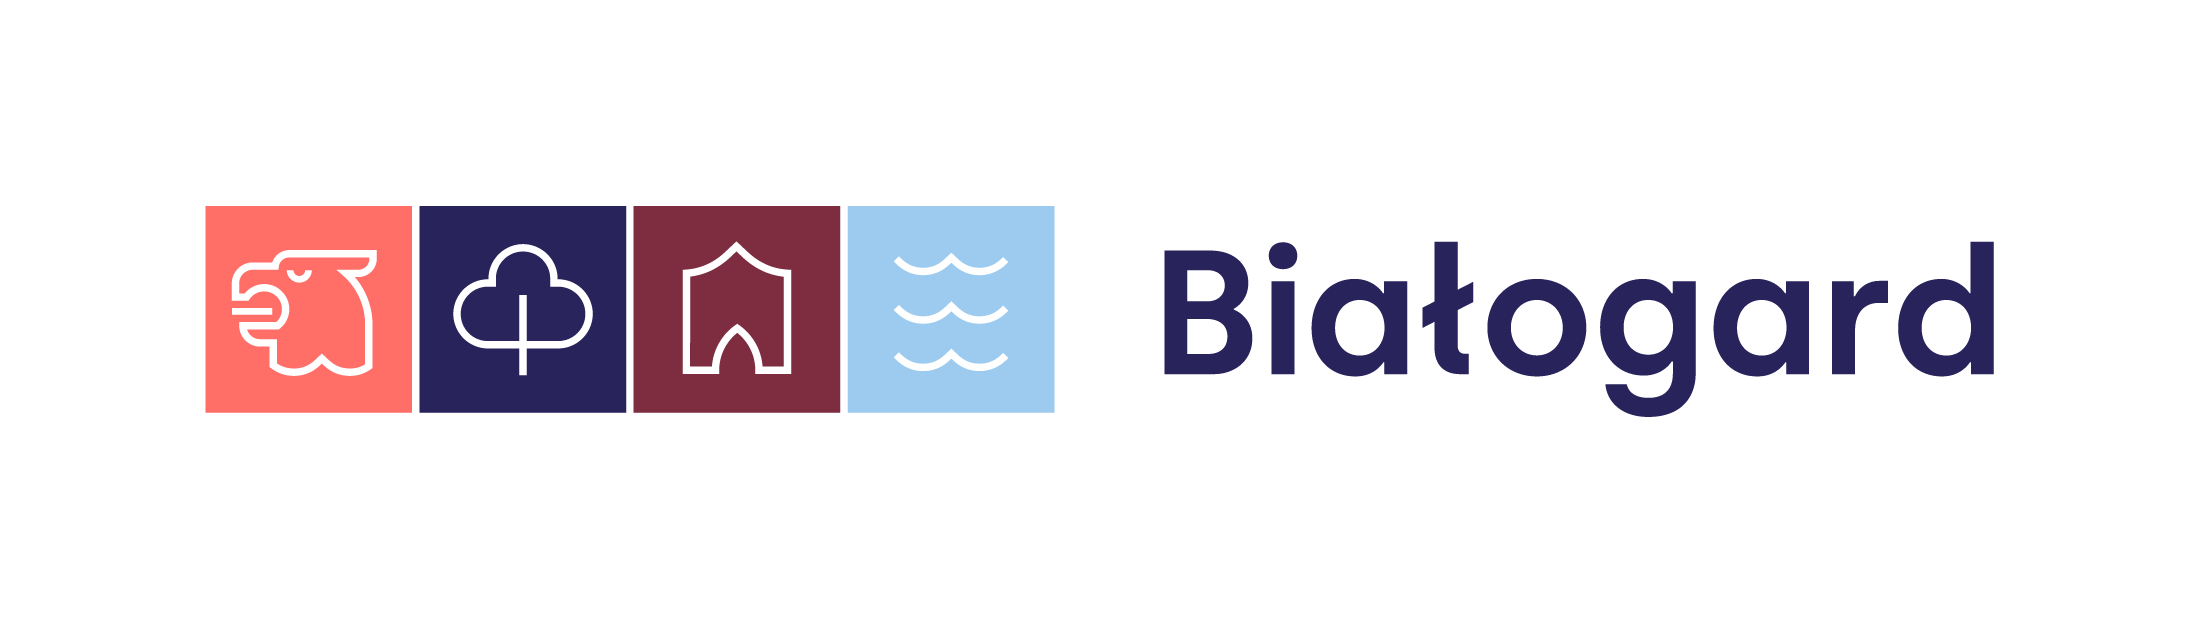 Bialogard logo podstawowe poziom